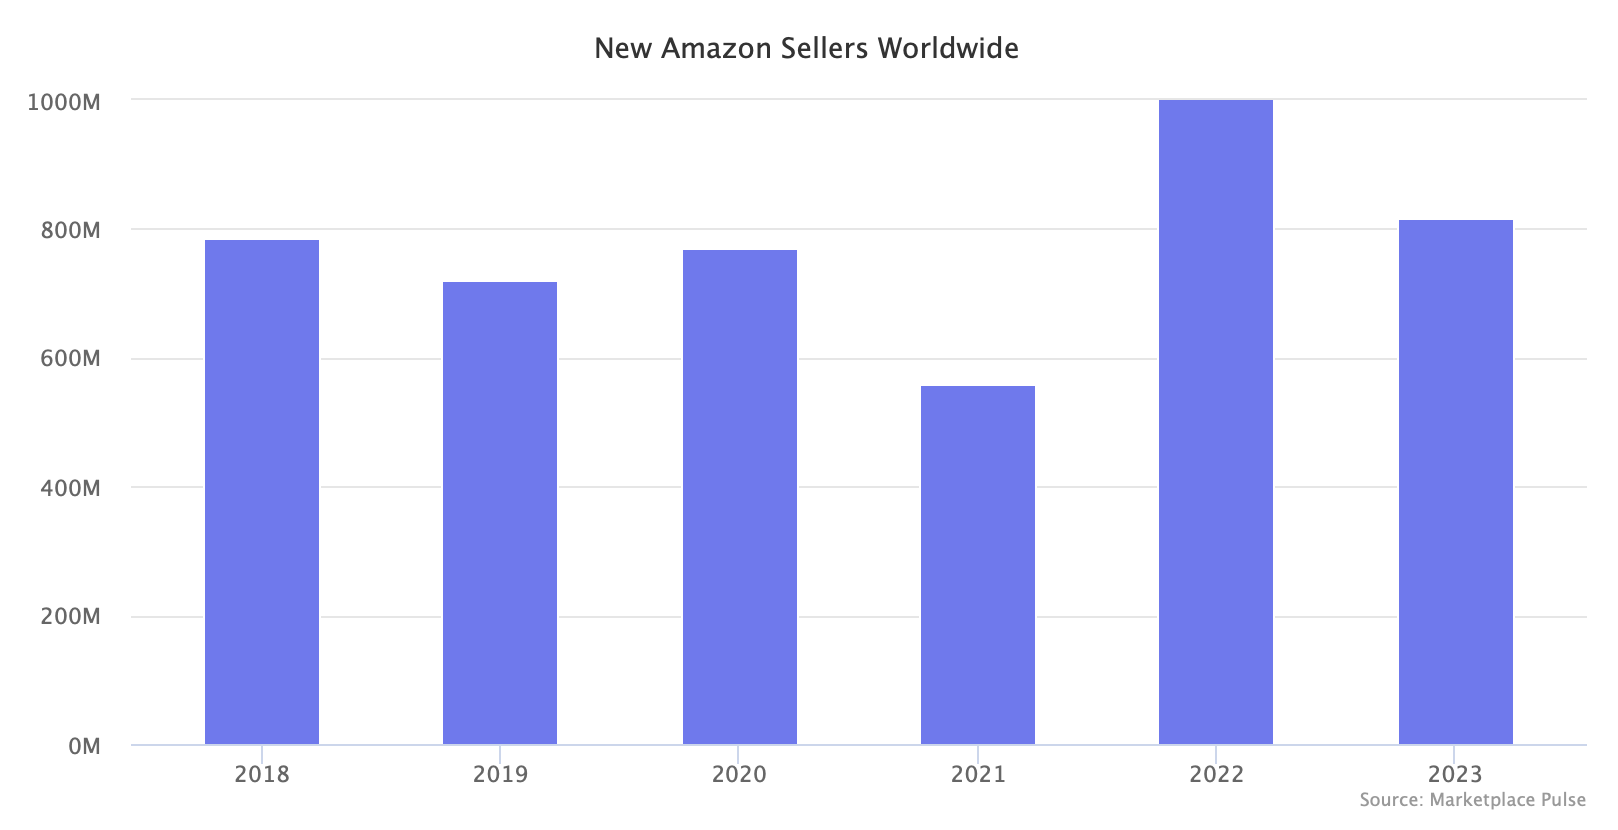 New Amazon Sellers Worldwide